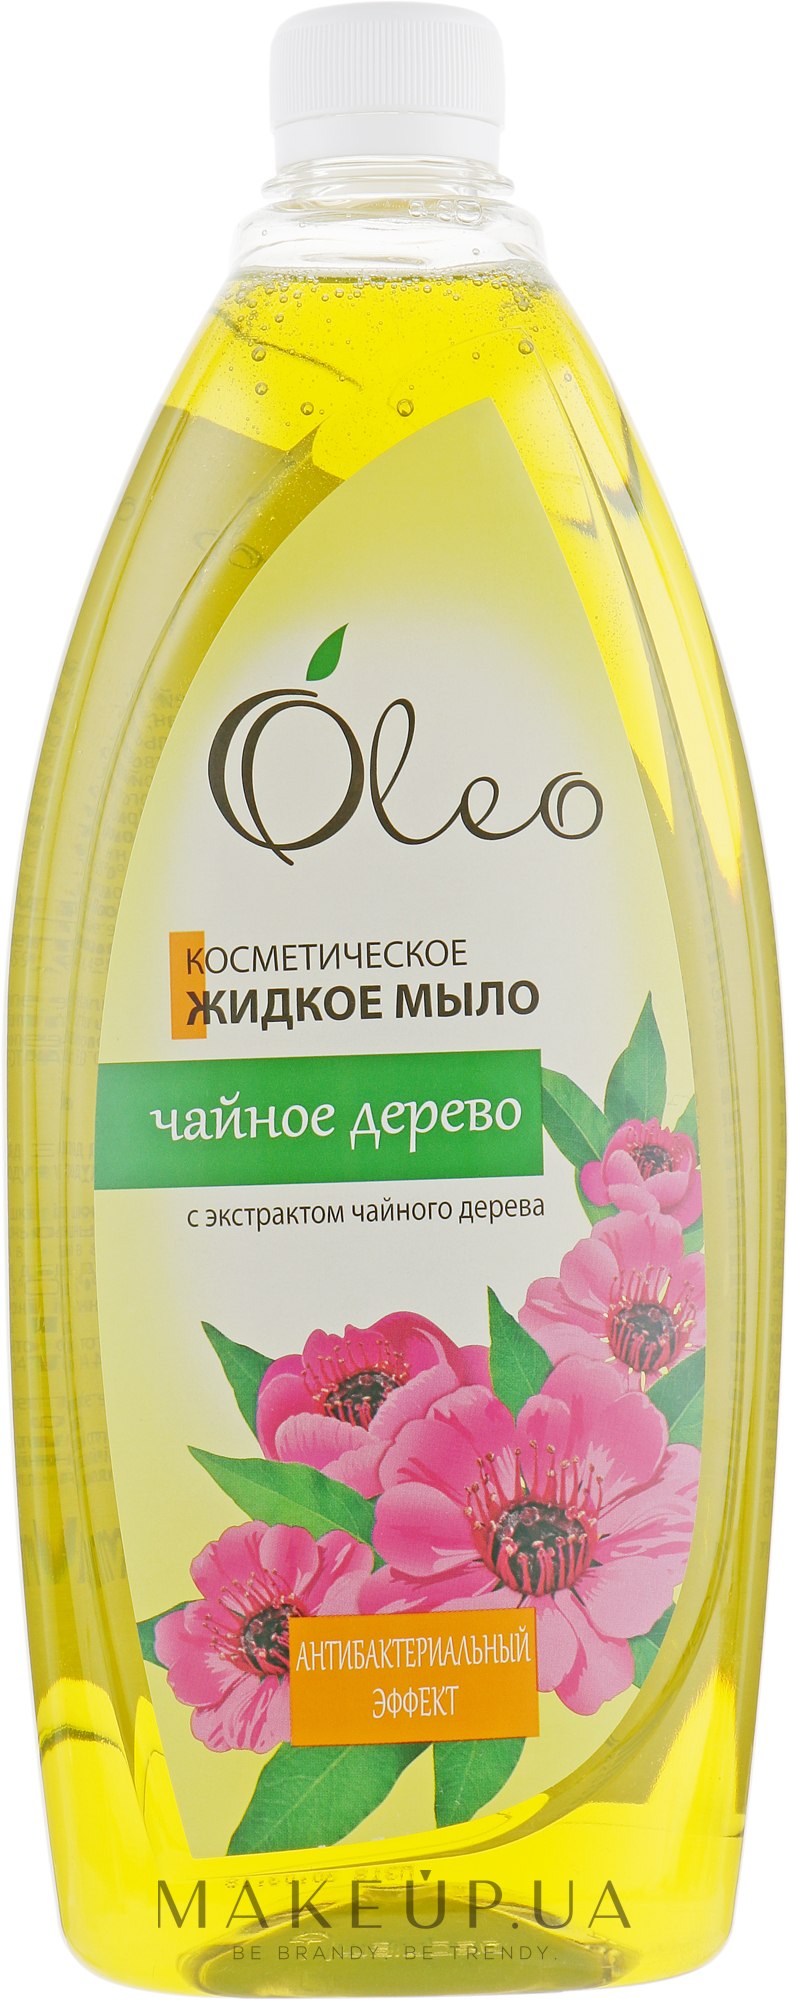 Косметическое жидкое мыло "Чайное дерево" - Oleo — фото 1000ml